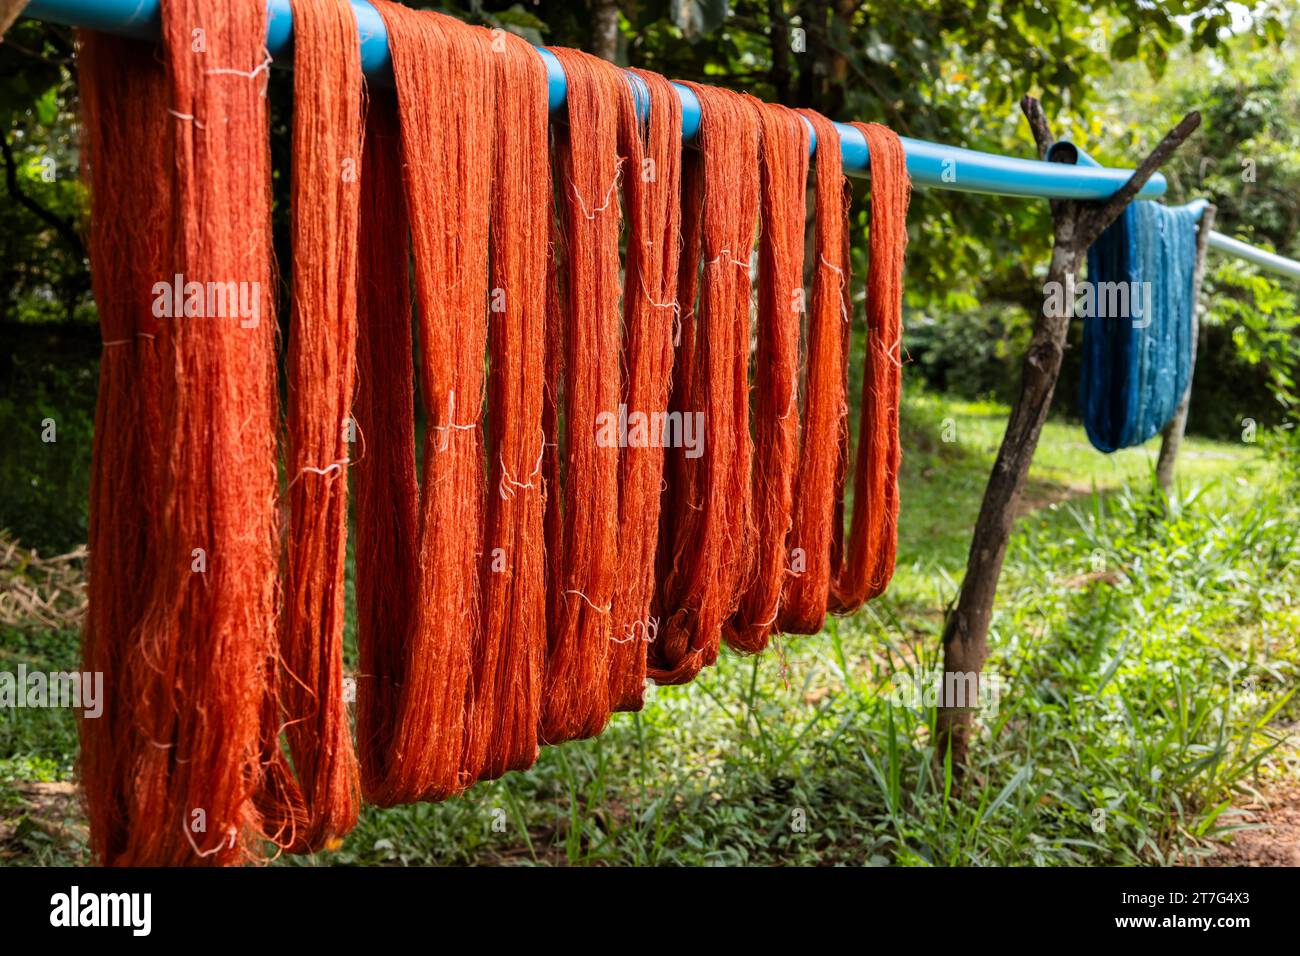 Ferme et usine de soie organique, séchage, soie teintée, Phonsavan, province de Xiangkhouang, Laos, Asie du Sud-est, Asie Banque D'Images